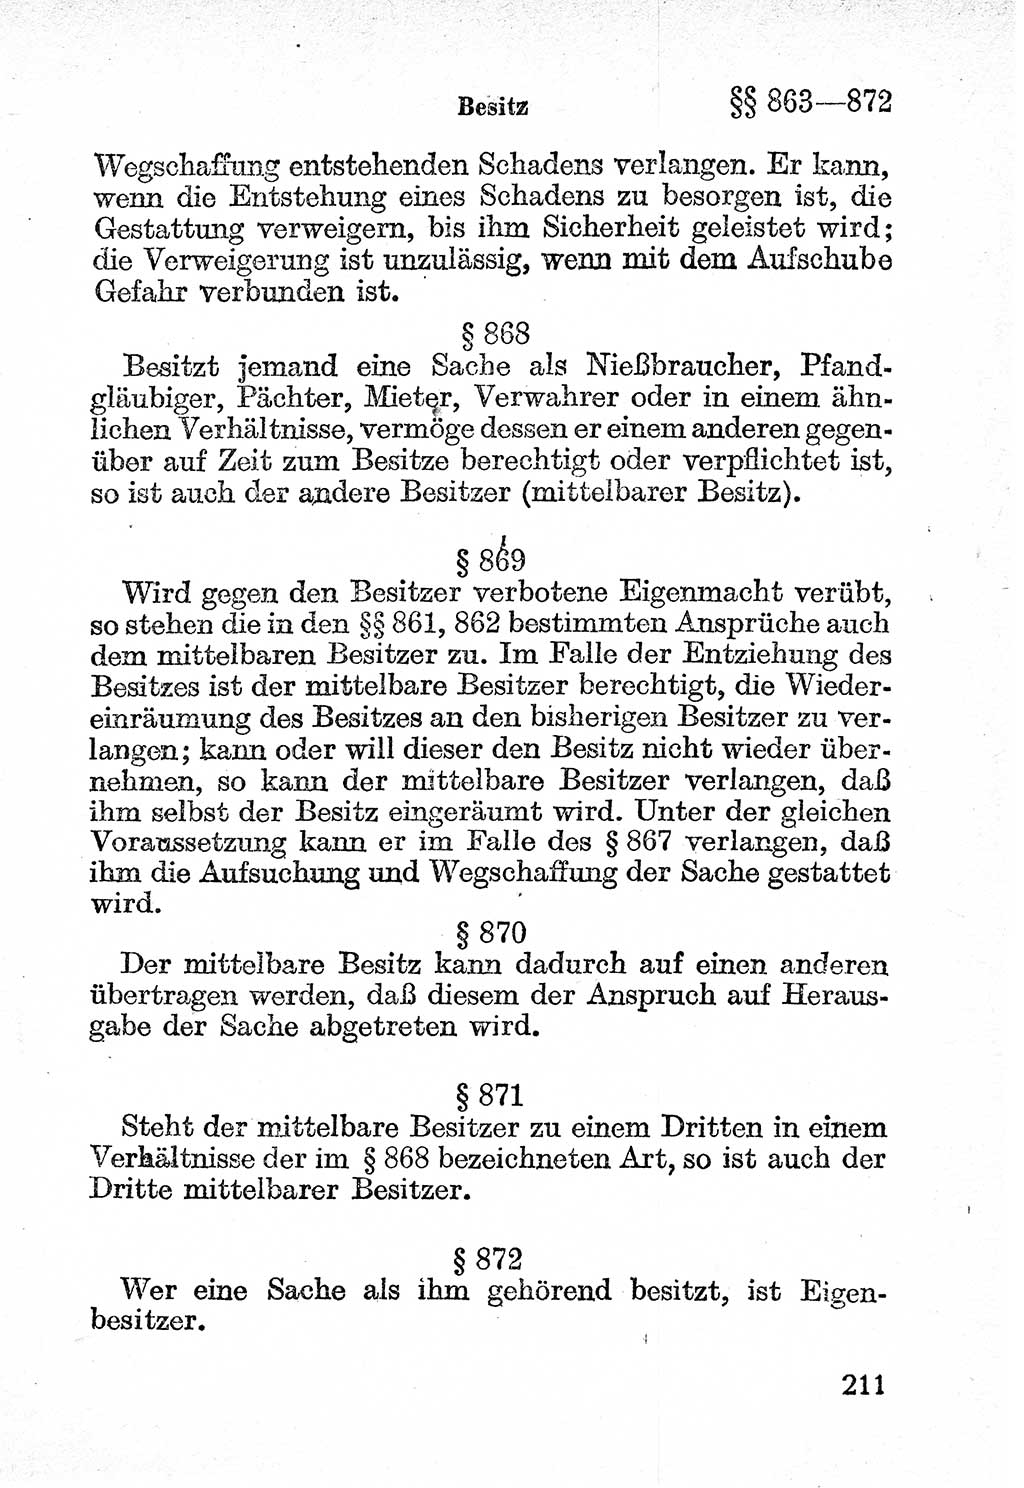 Bürgerliches Gesetzbuch (BGB) nebst wichtigen Nebengesetzen [Deutsche Demokratische Republik (DDR)] 1956, Seite 211 (BGB Nebenges. DDR 1956, S. 211)